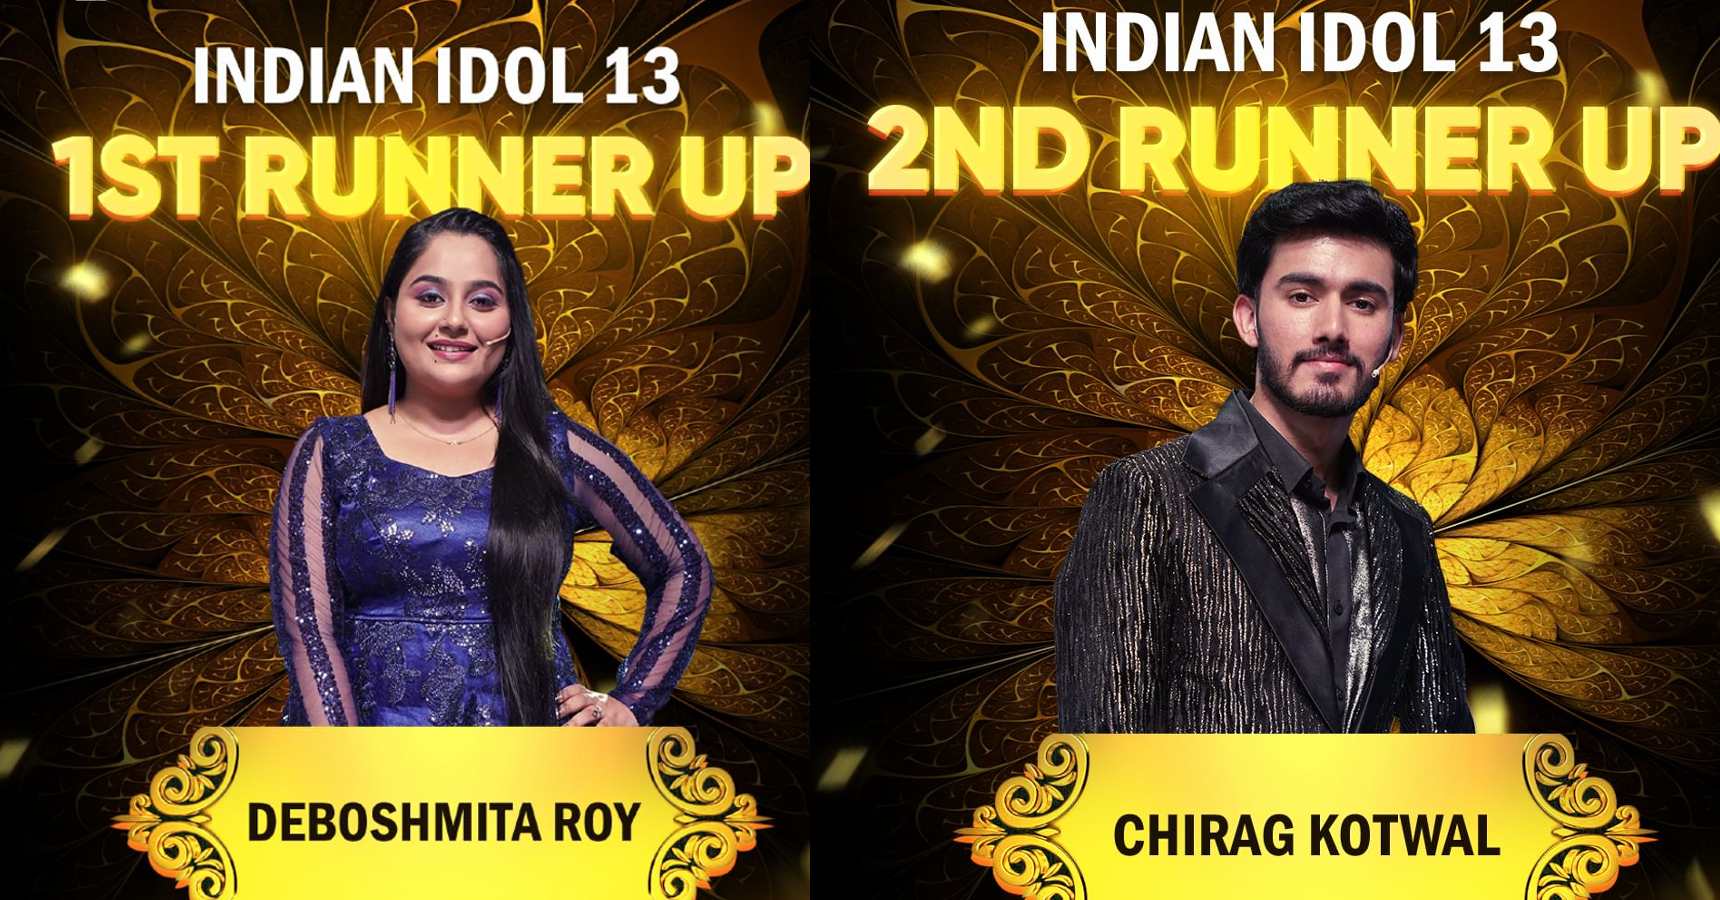 ইন্ডিয়ান আইডল,Indian Idol,গানের প্রতিযোগিতা,Music Competition,গ্রান্ড ফিনালে,Grand Finale,বিজয়ী,Winner,ঋষি সিং,Rishi Singh,দেবস্মিতা রায়,Deboshmita Roy,বাংলা,Bengal,Indian Idol 13,Indian Idol Winner,Indian Idol Winner Rishi Singh